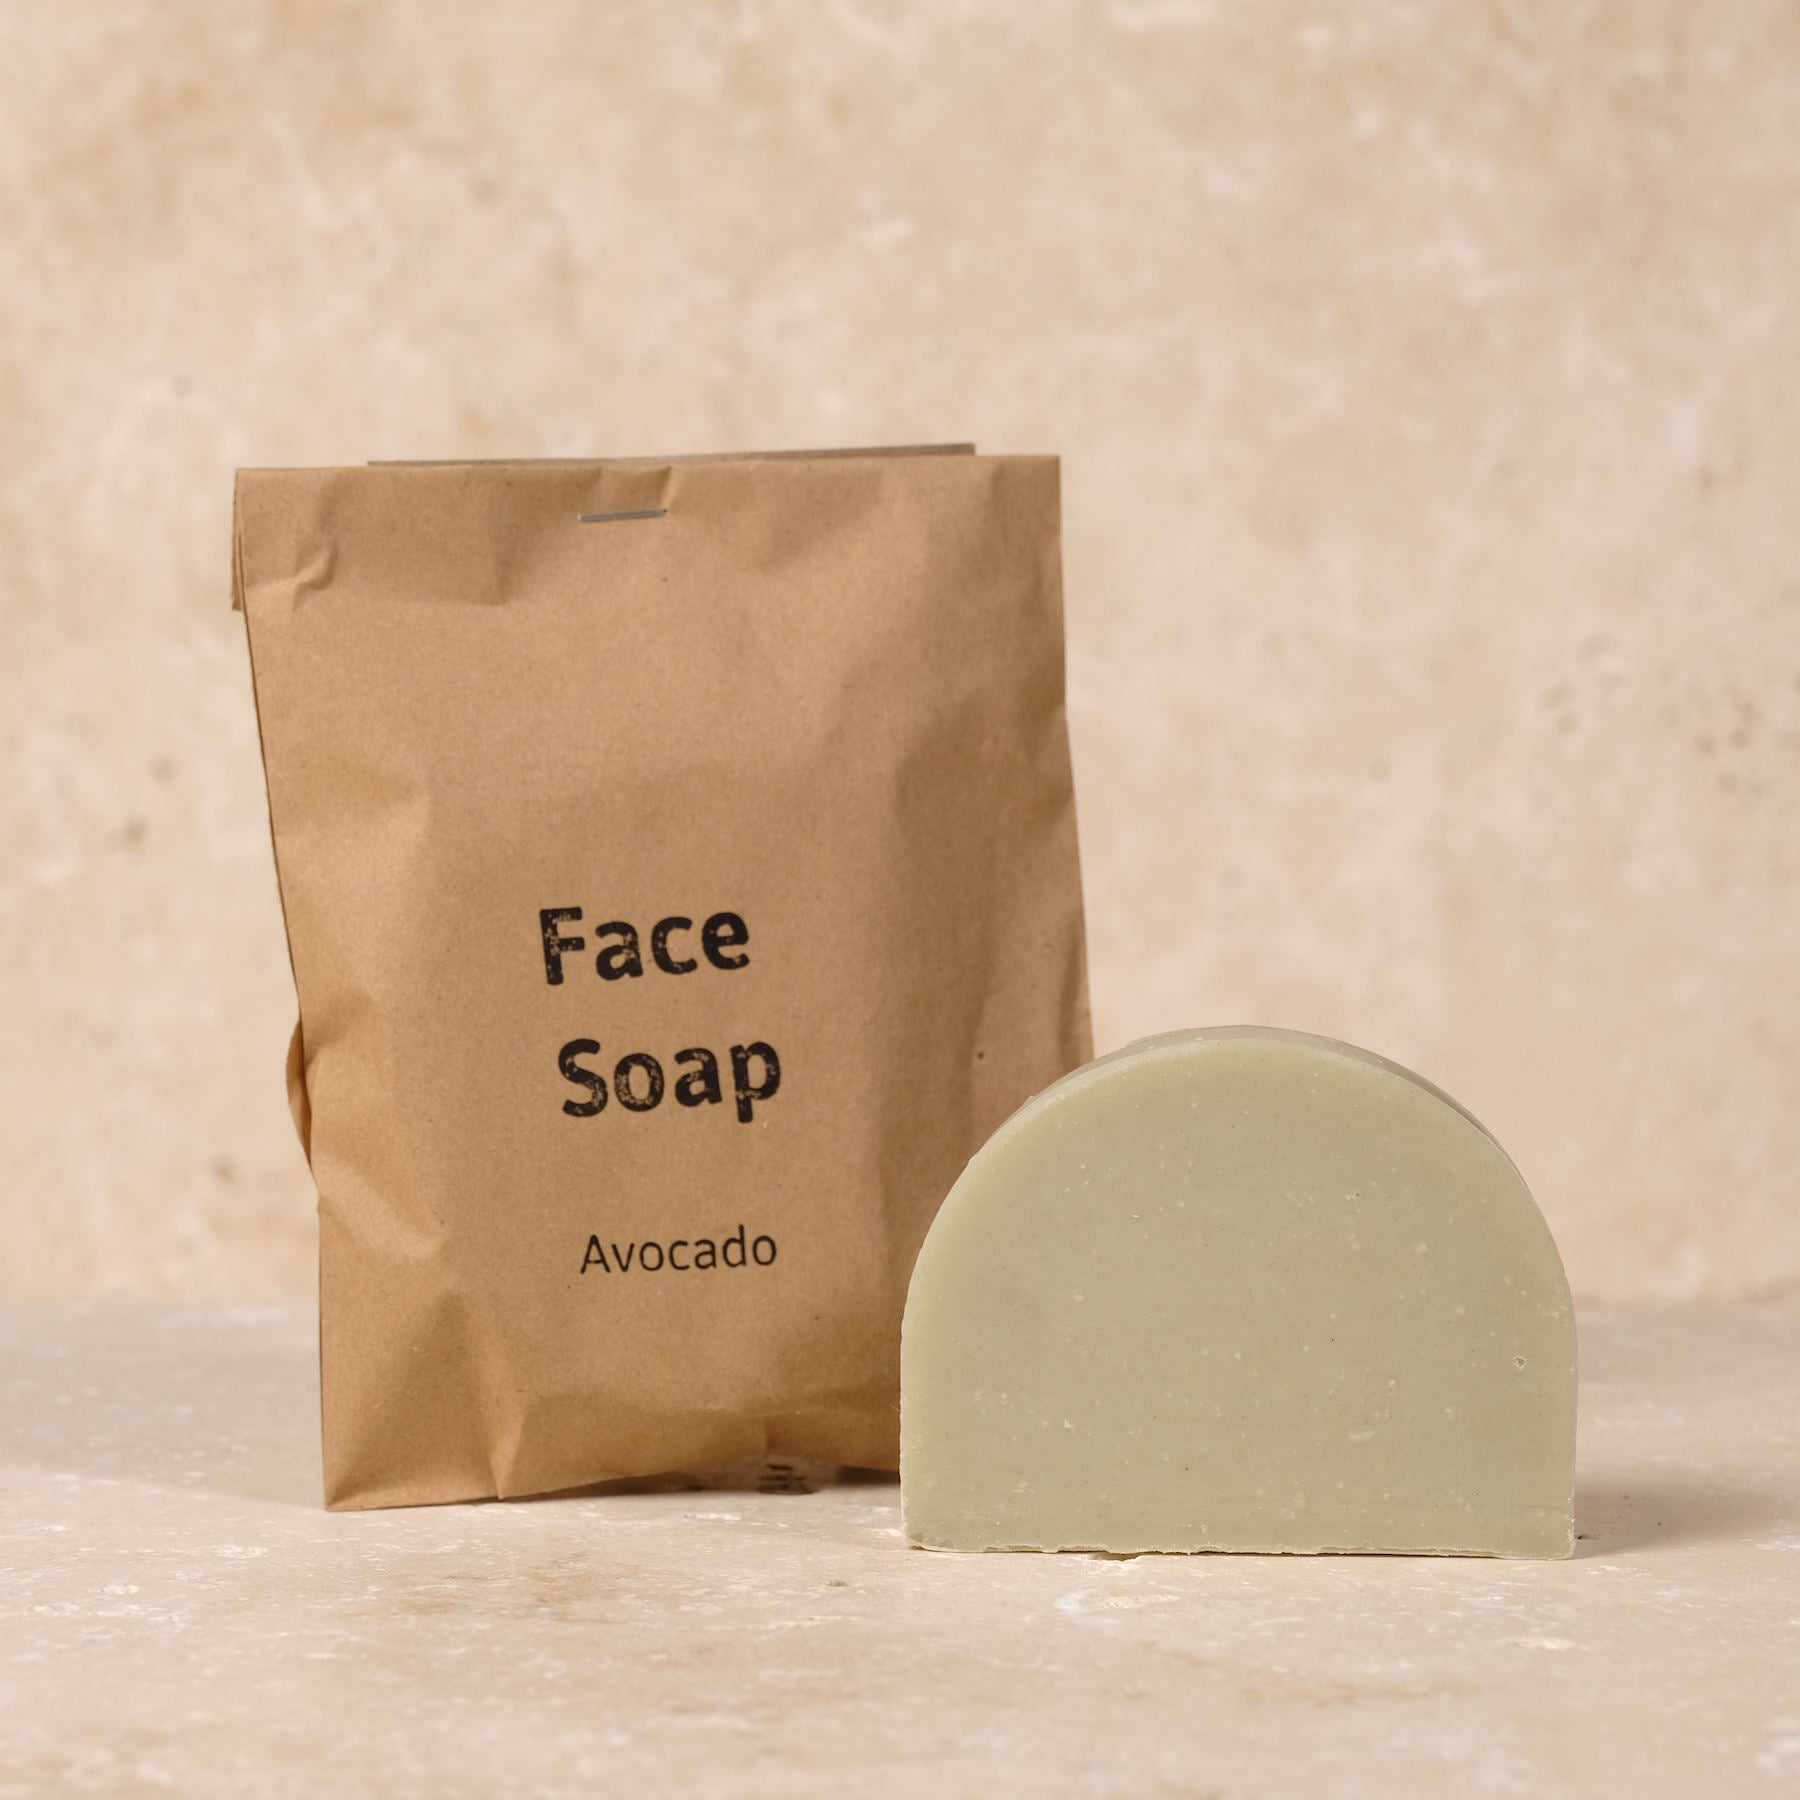 Savon pour le visage - Face Soap - Avocado à base des meilleurs ingrédients et de sel marin. Acheter maintenant dans le Yoga Shop suisse.